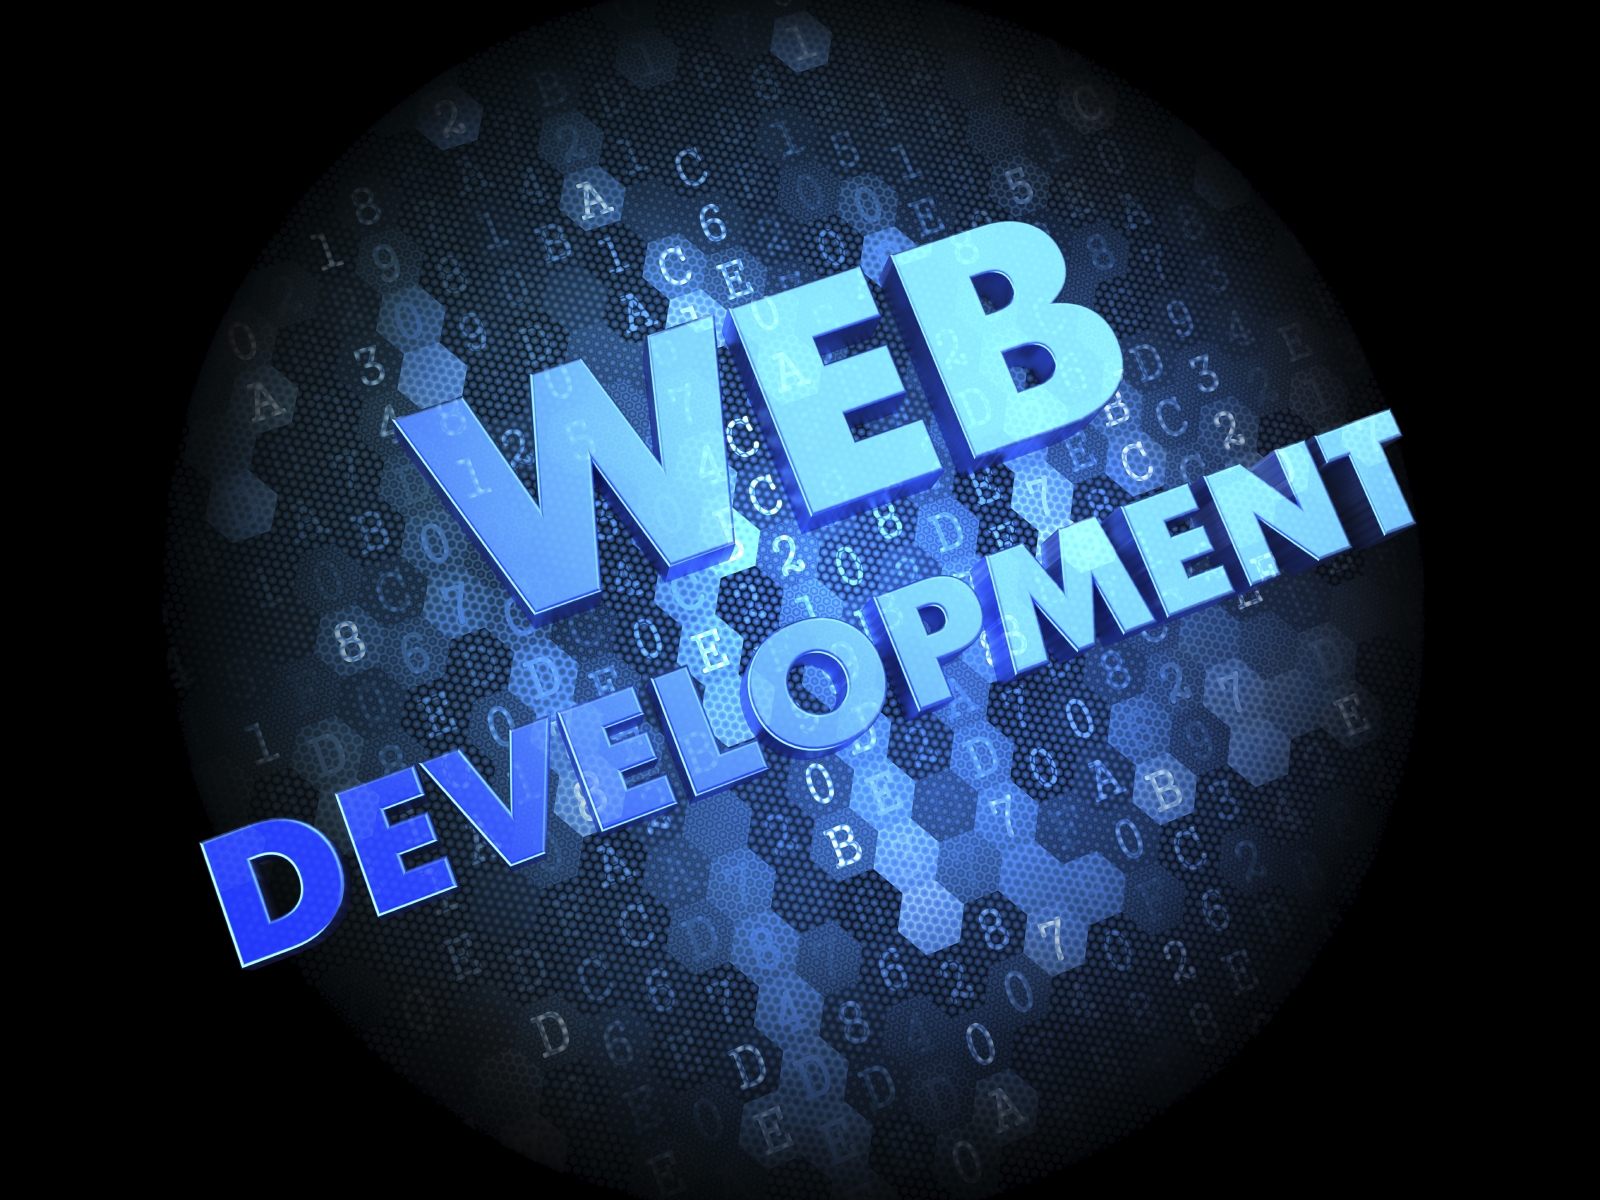 webdevelopment_1600x1200_021014.jpg